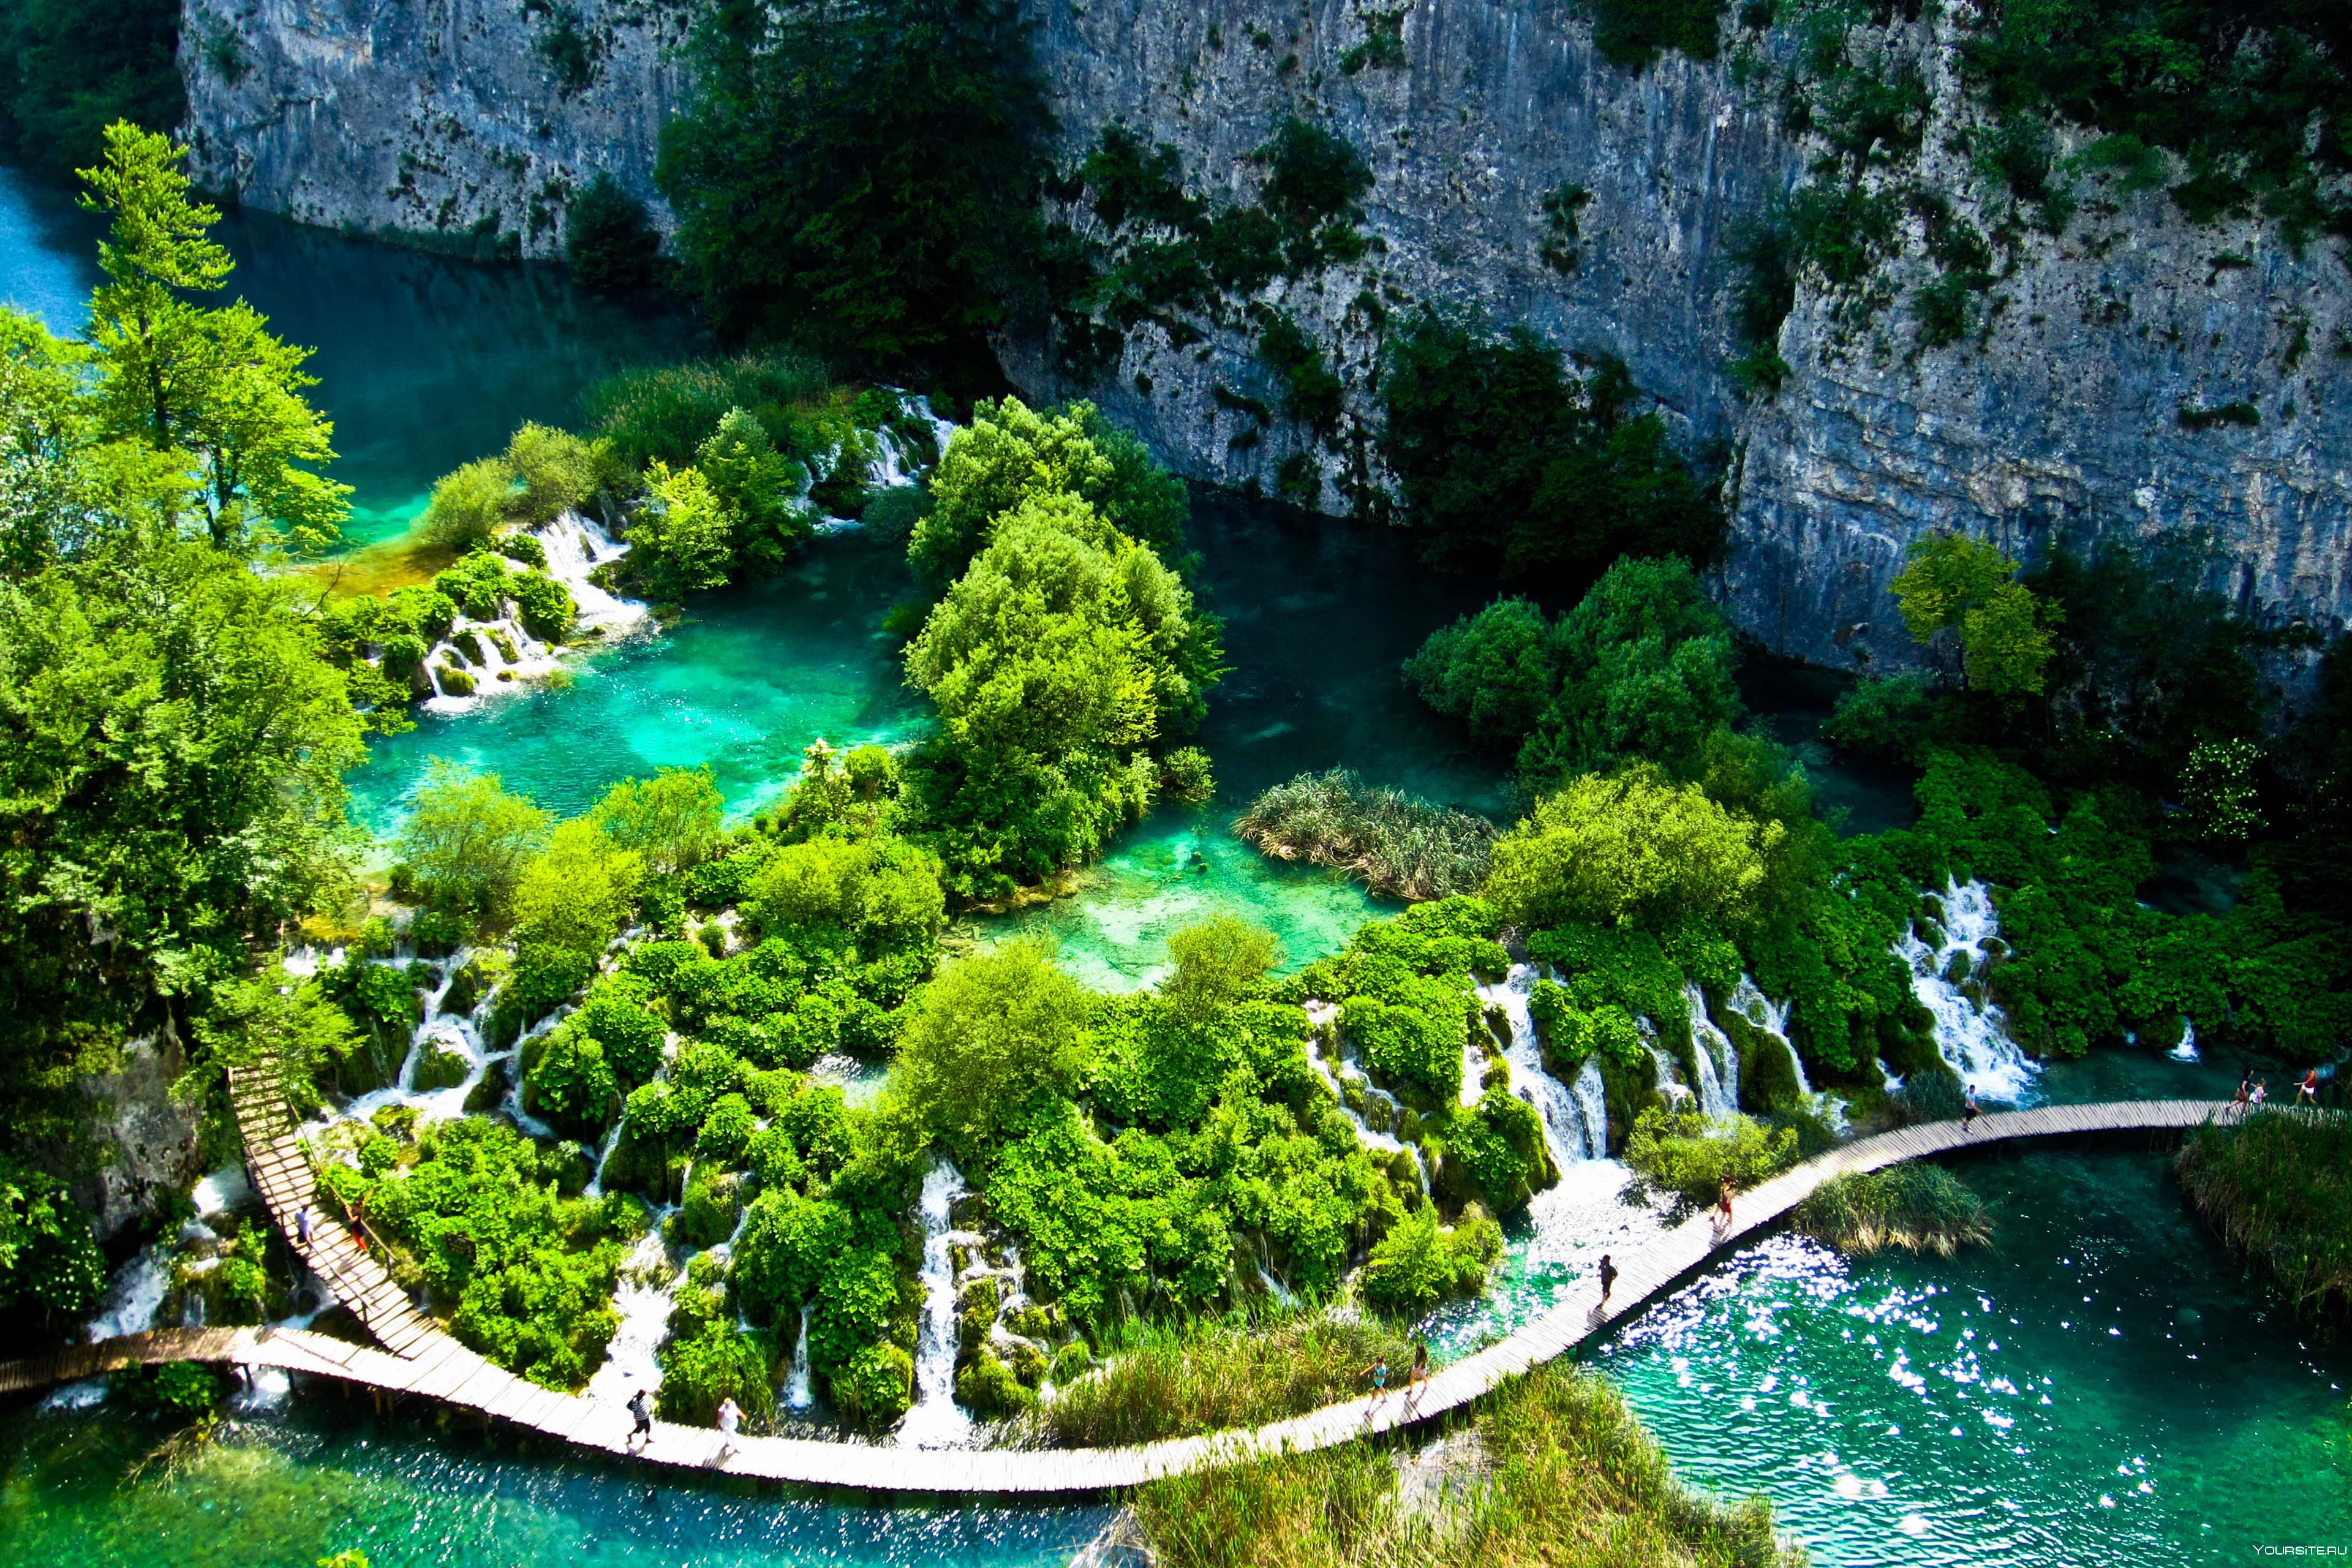 Beautiful place. Плитвицкие озёра Хорватия. Плитвицкие озера - крупнейший национальный парк Хорватии. Притвицкие озёра Хорватия. Хорватия национальный парк Плитвице.